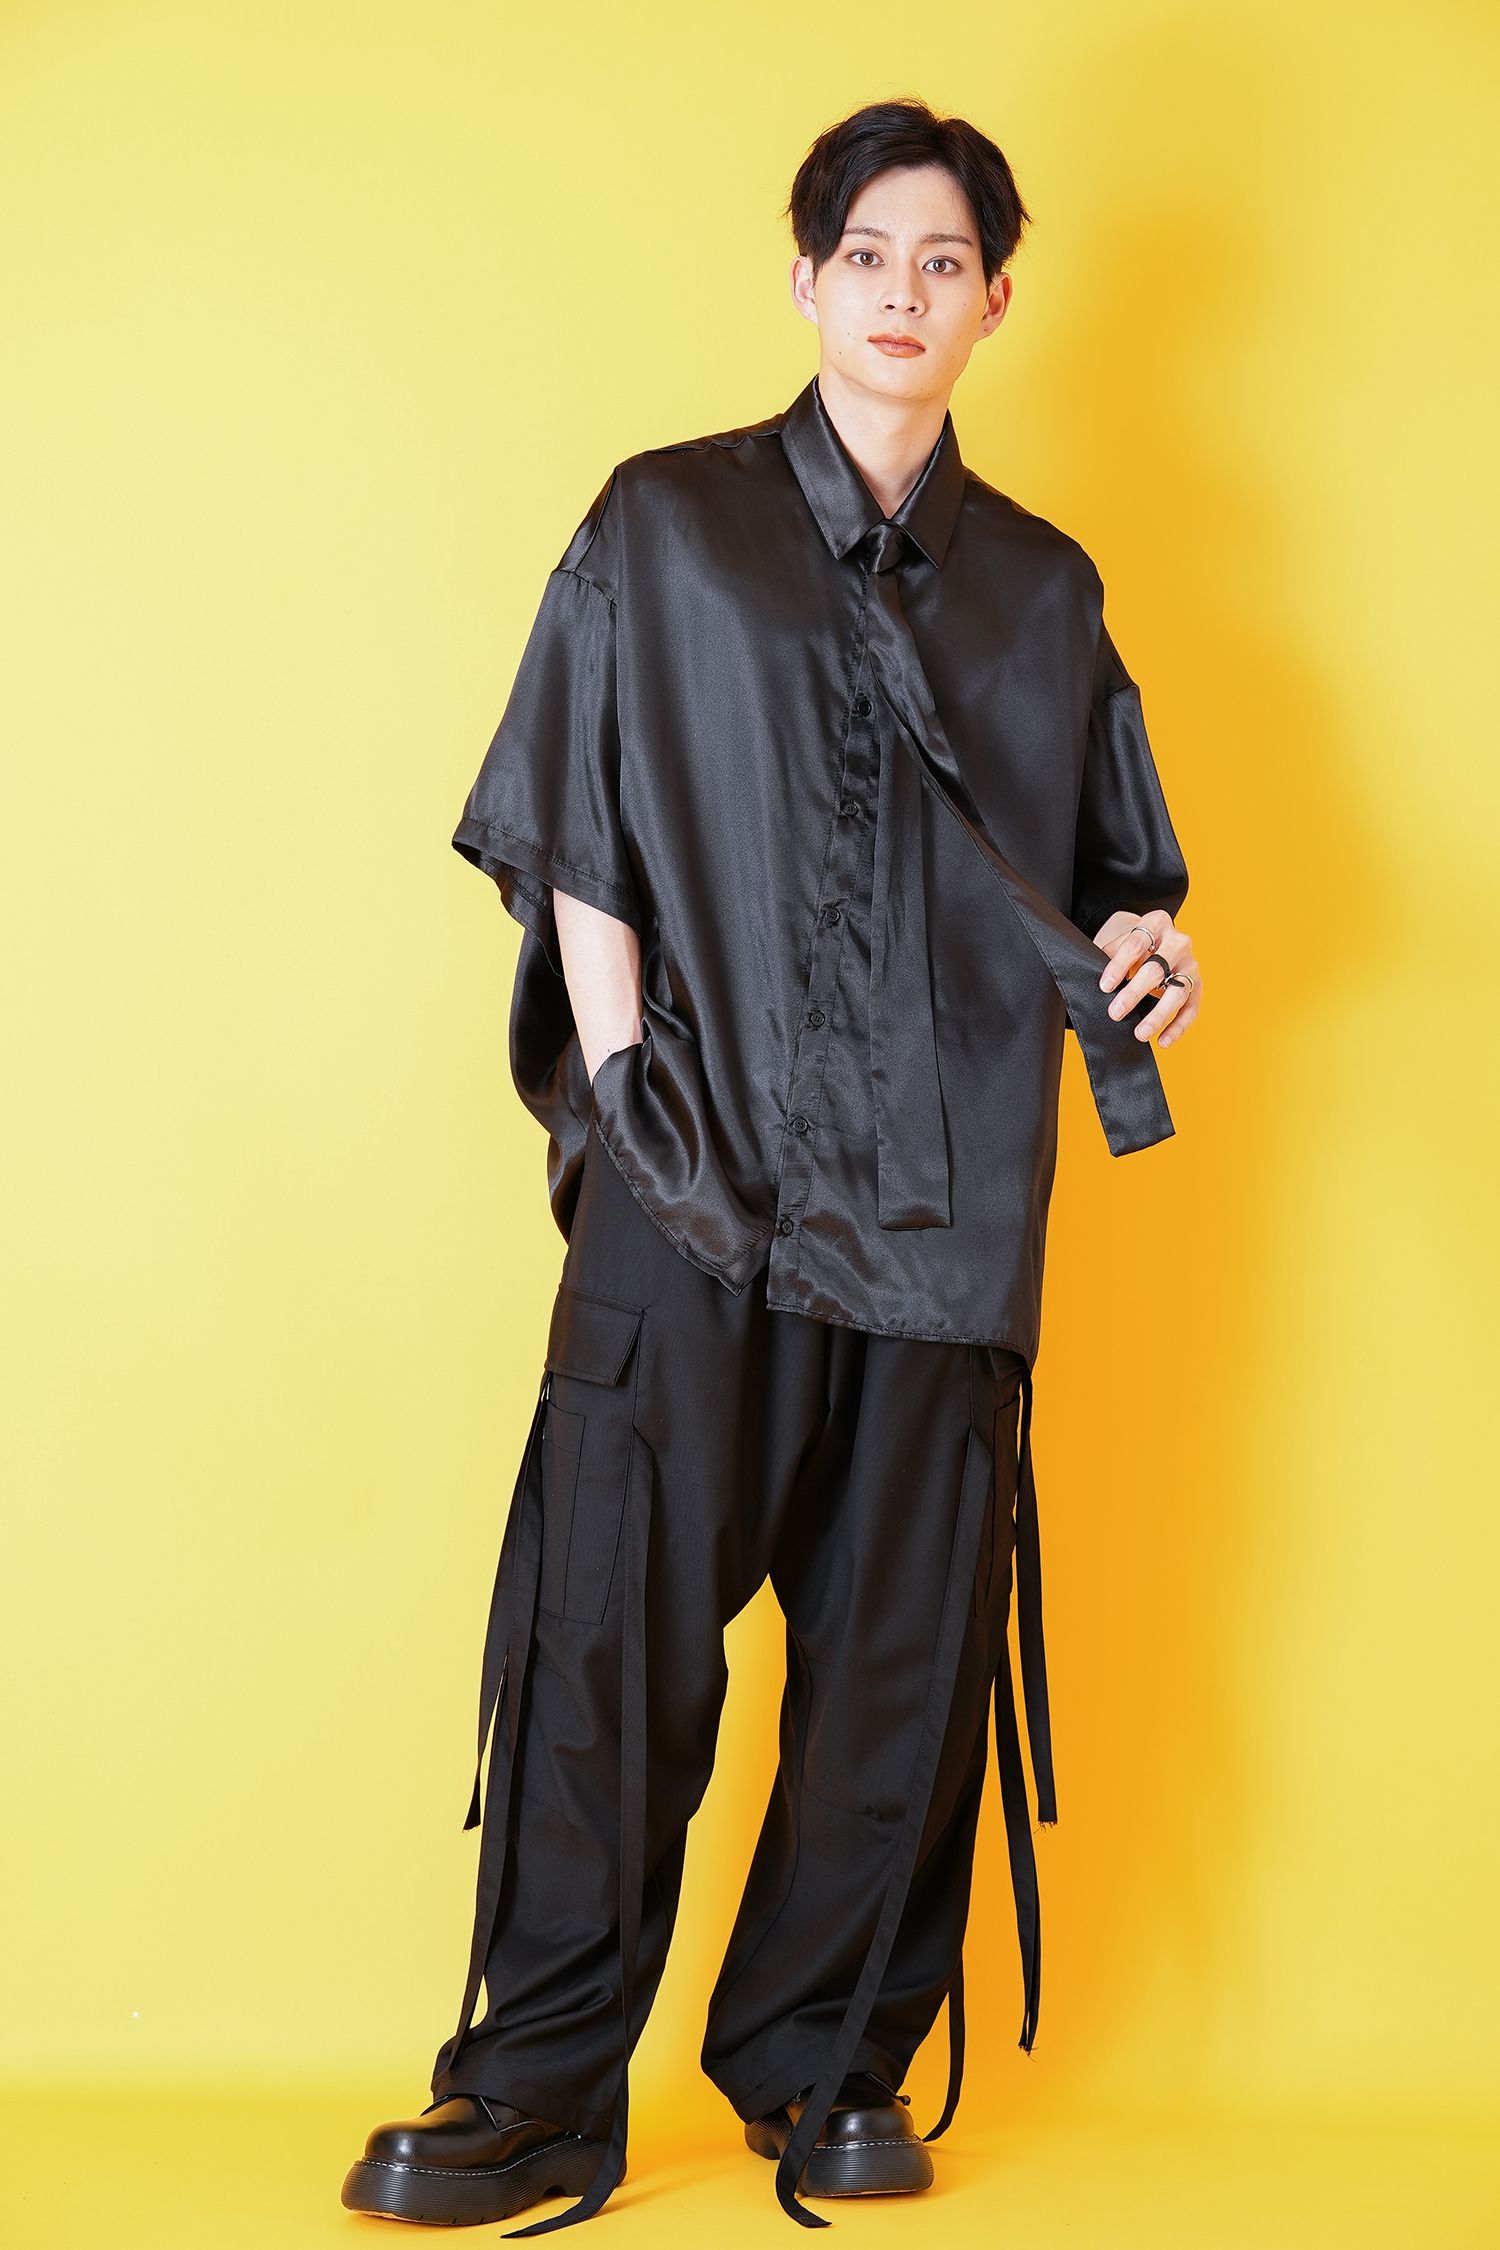 リボンタイサテン半袖シャツ -オーバーサイズ- / ネクタイ付き ankoROCK(アンコロック) メンズ レディース ユニセックス ステージ 衣装